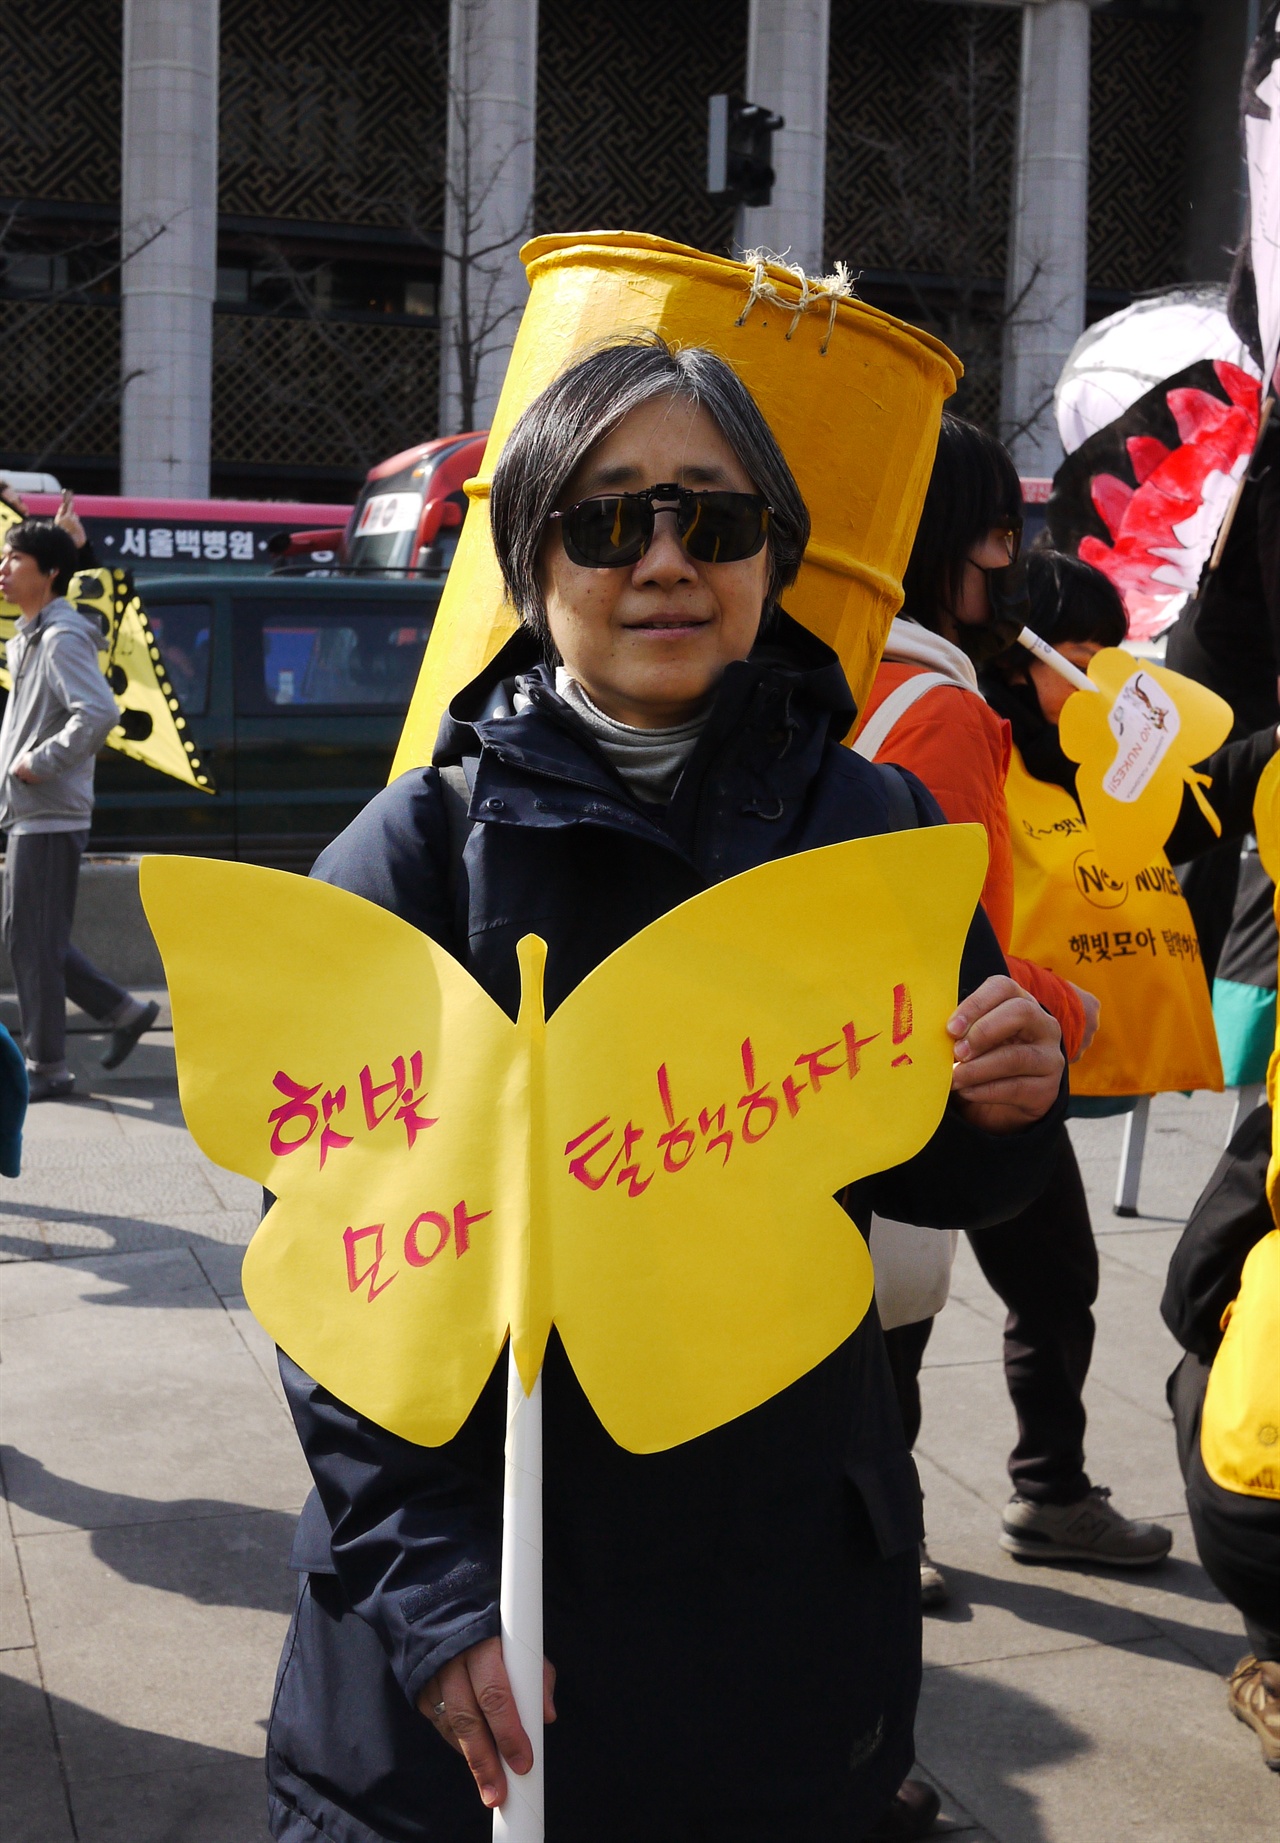  올해로 네 번째 탈핵 행진에 나왔다는 김영희(58) 수녀는 “후쿠시마 사고를 계기로 탈핵에 관심을 갖게 됐다”며 “특히 청년층이 환경문제에 관심을 가져야 한다”고 말했다. ⓒ 조은비